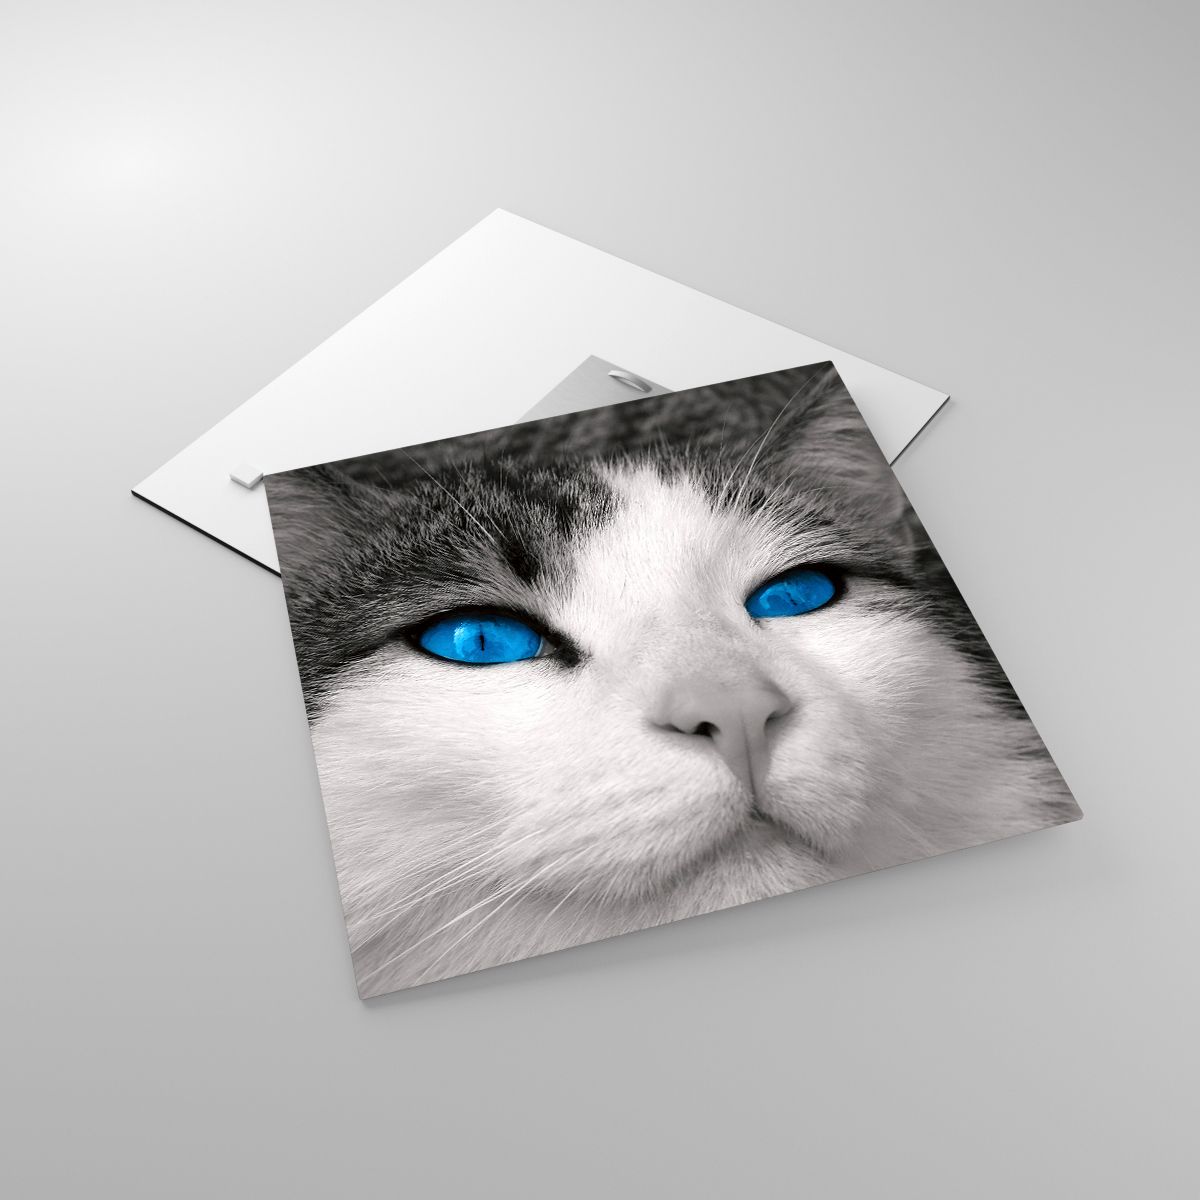 Glasbild Tiere, Glasbild Katze, Glasbild Blaue Augen, Glasbild Freund, Glasbild Schwarz Und Weiß